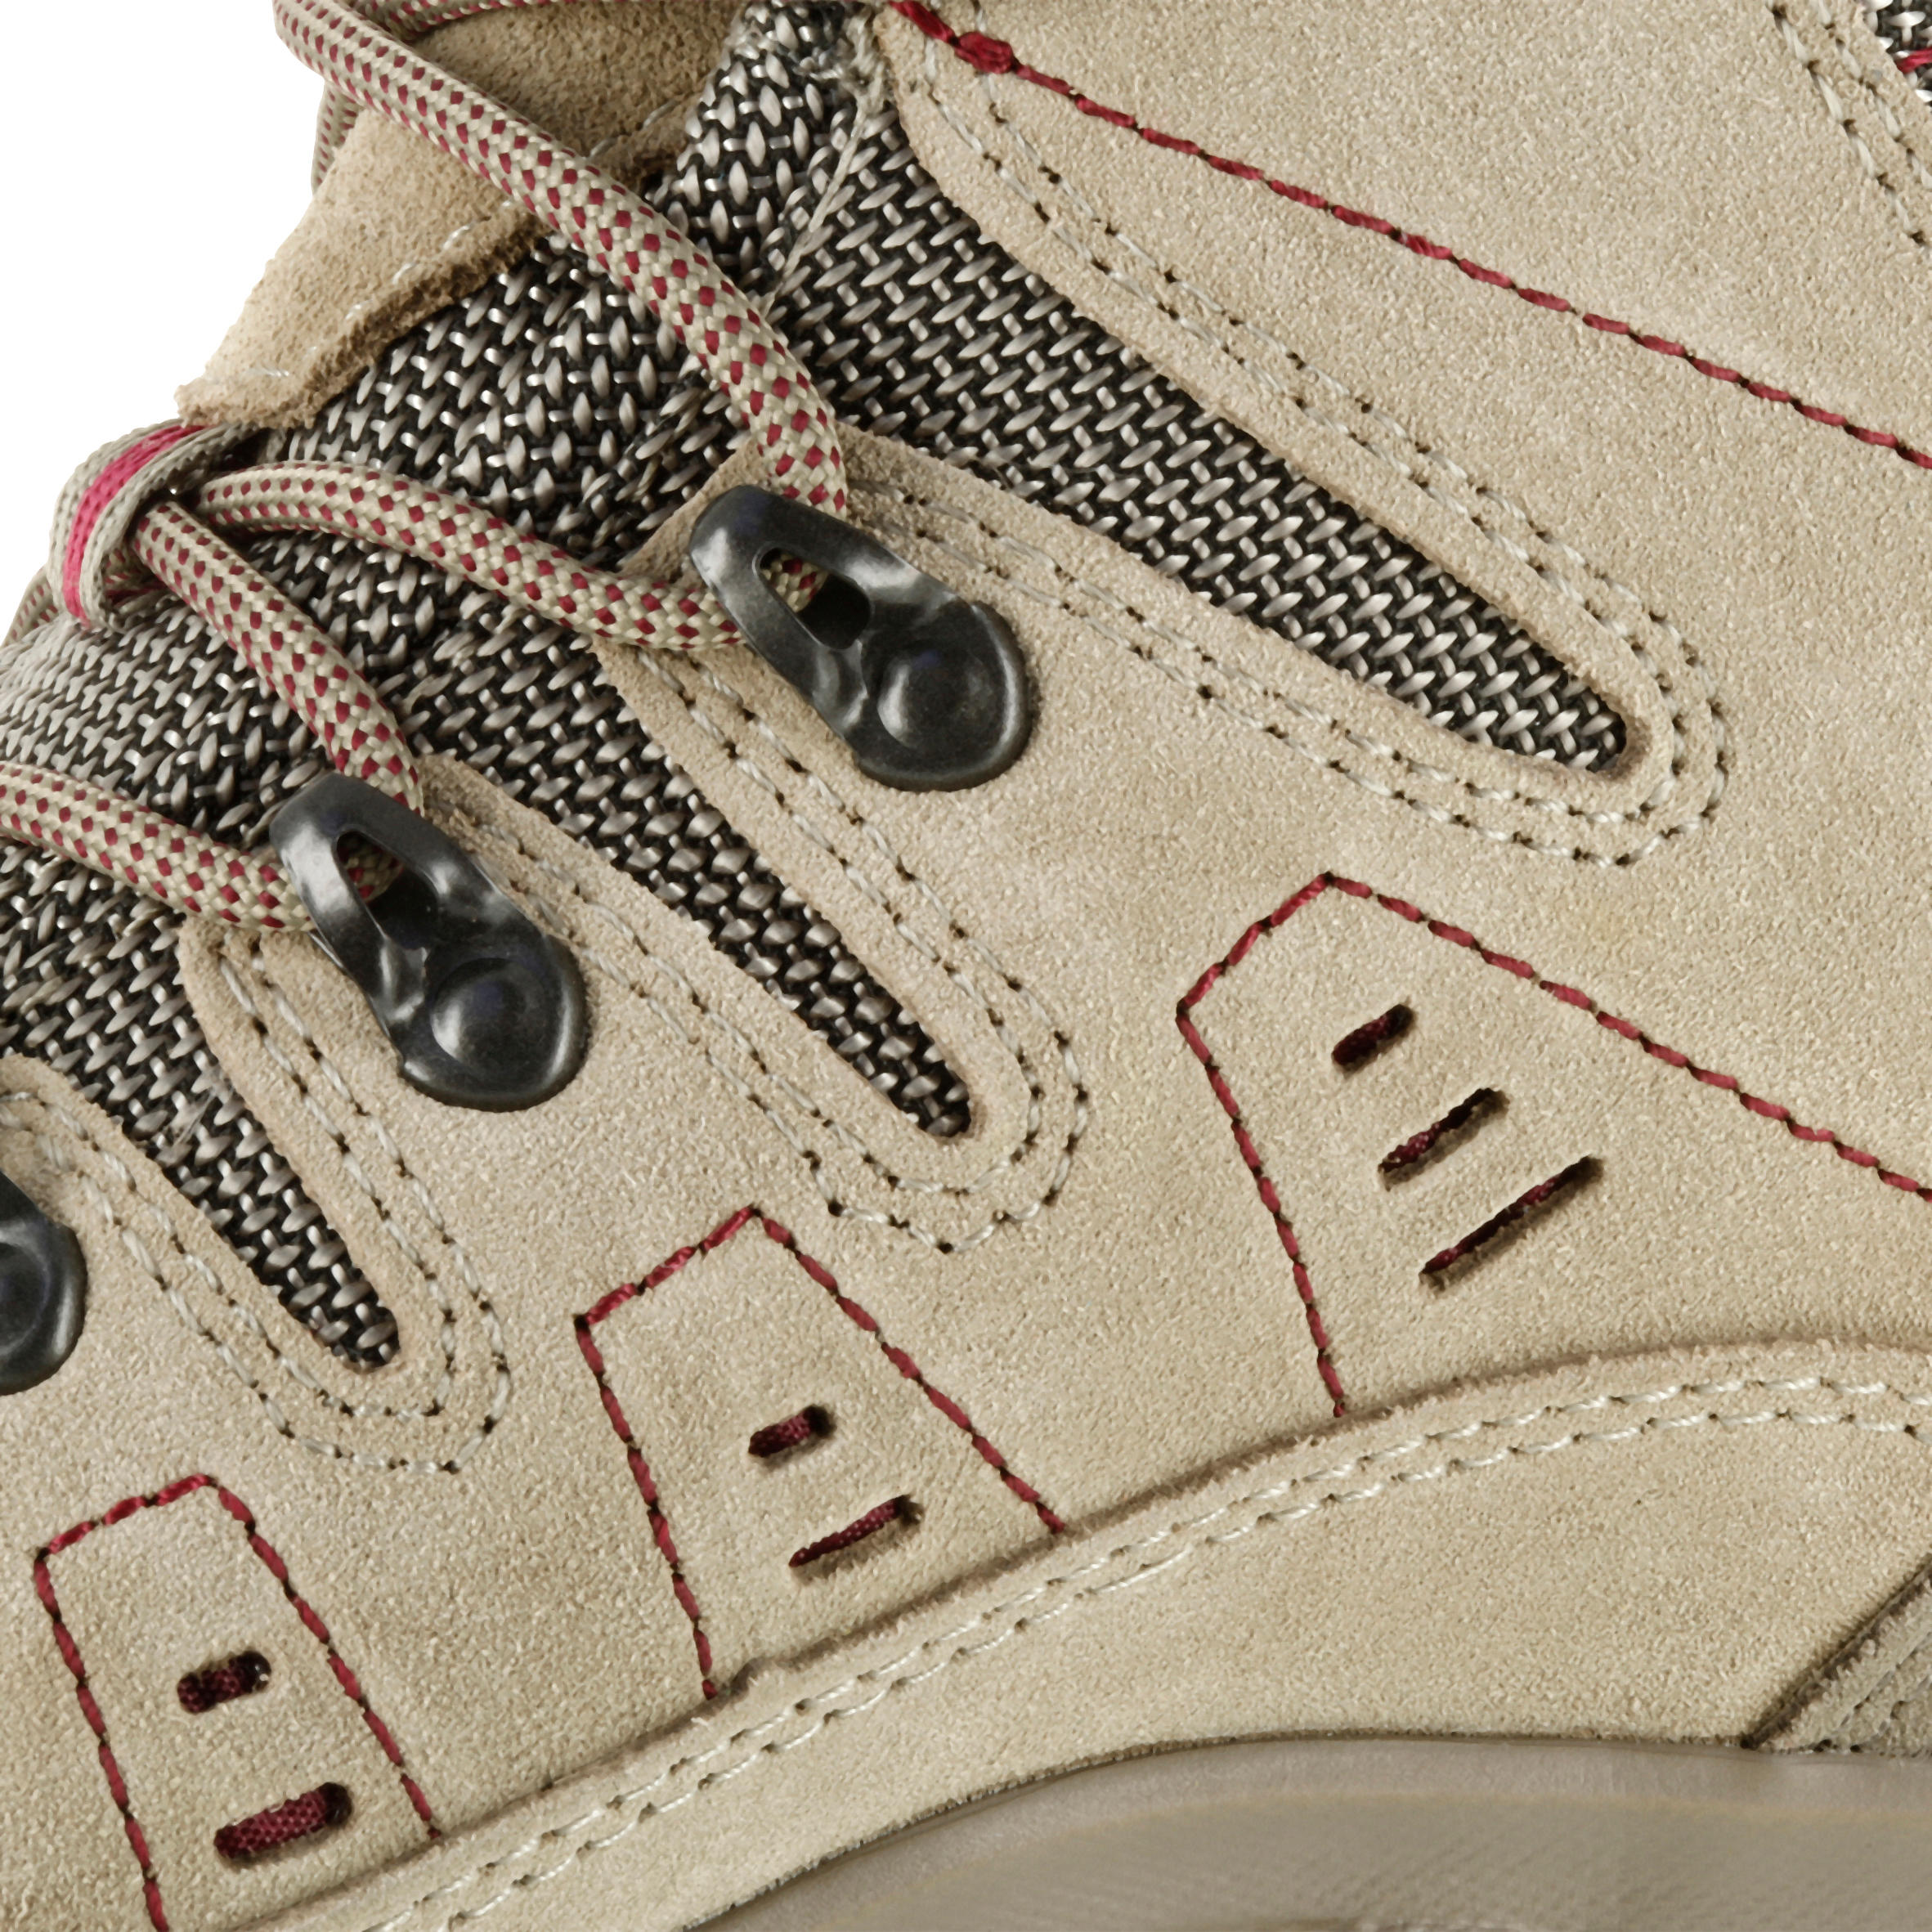 Waterproof Trekking Shoes - GORETEX - VIBRAM-TECNICA STARCROSS - W Beige 9/13